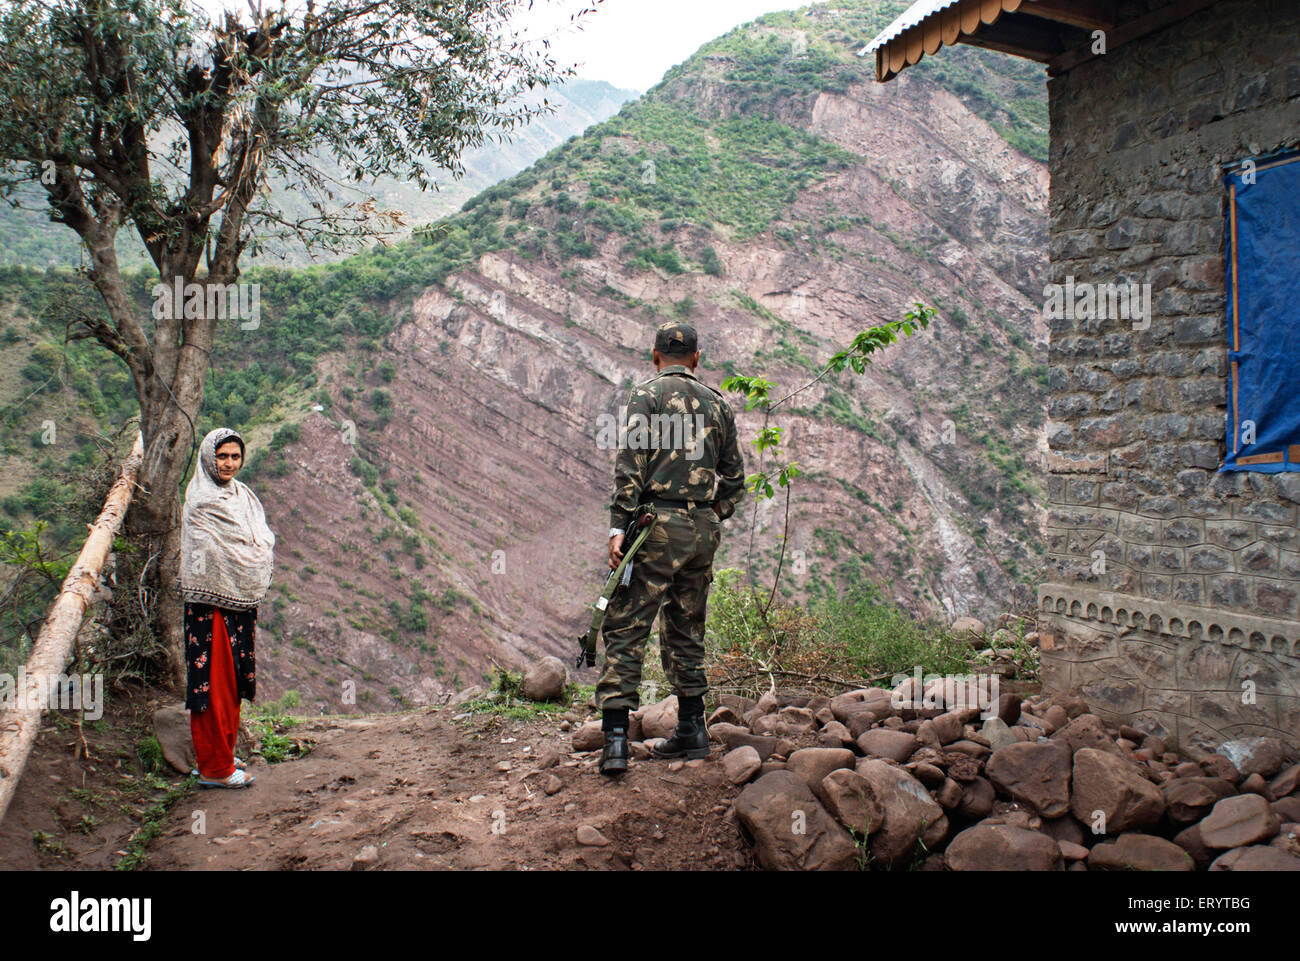 Force de sécurité des frontières soldat avec femme d'Uri ; Urusa ; Jammu-et-Cachemire en Inde ; PAS DE MR 7 Avril 2008 Banque D'Images